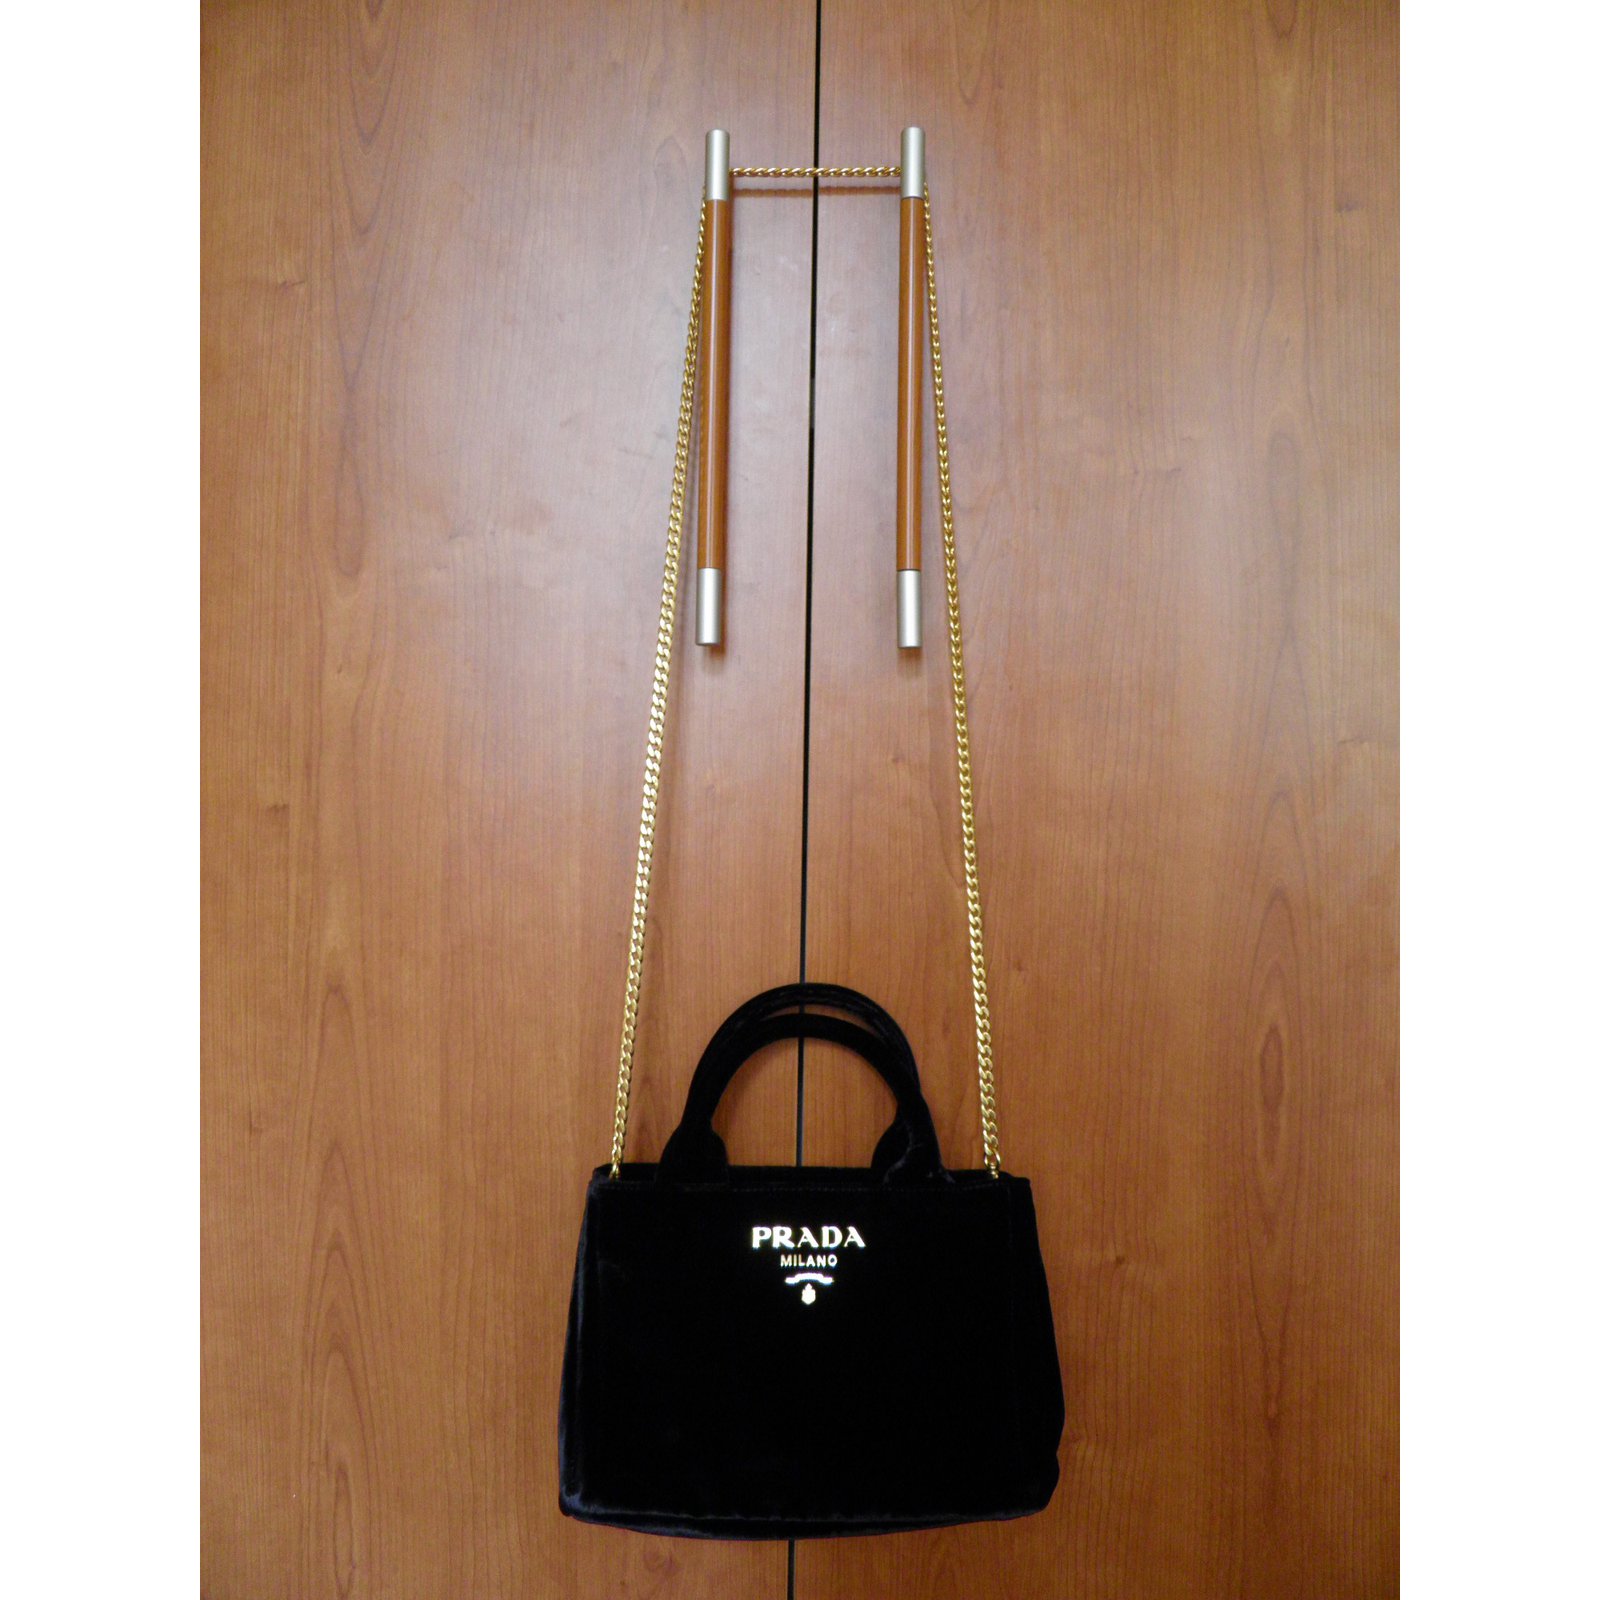 Prada mini bag Handbags Velvet Black 